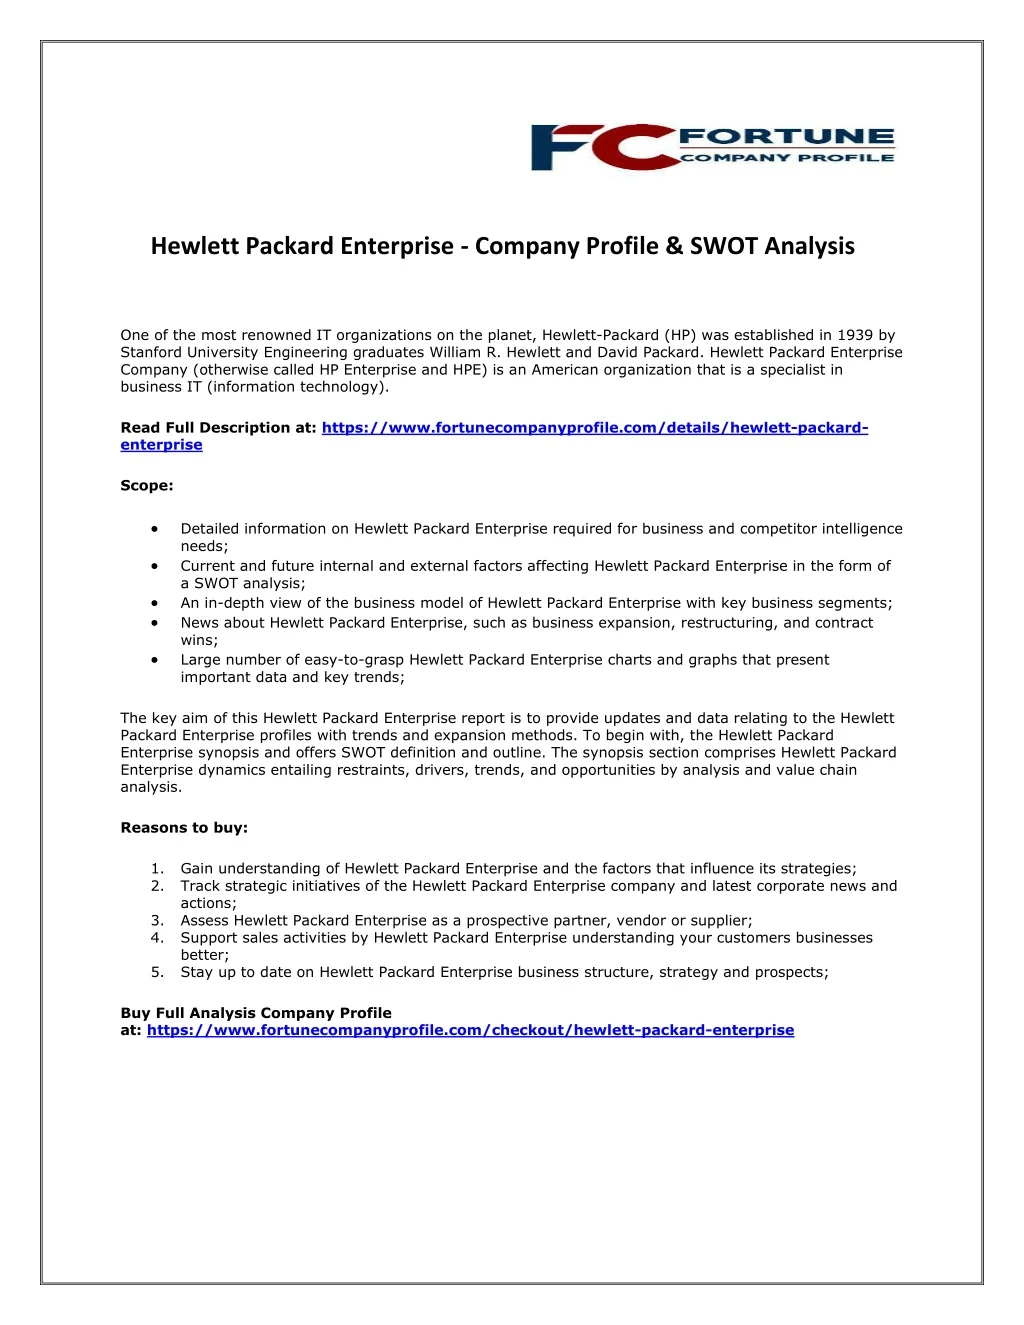 hewlett packard enterprise company profile swot